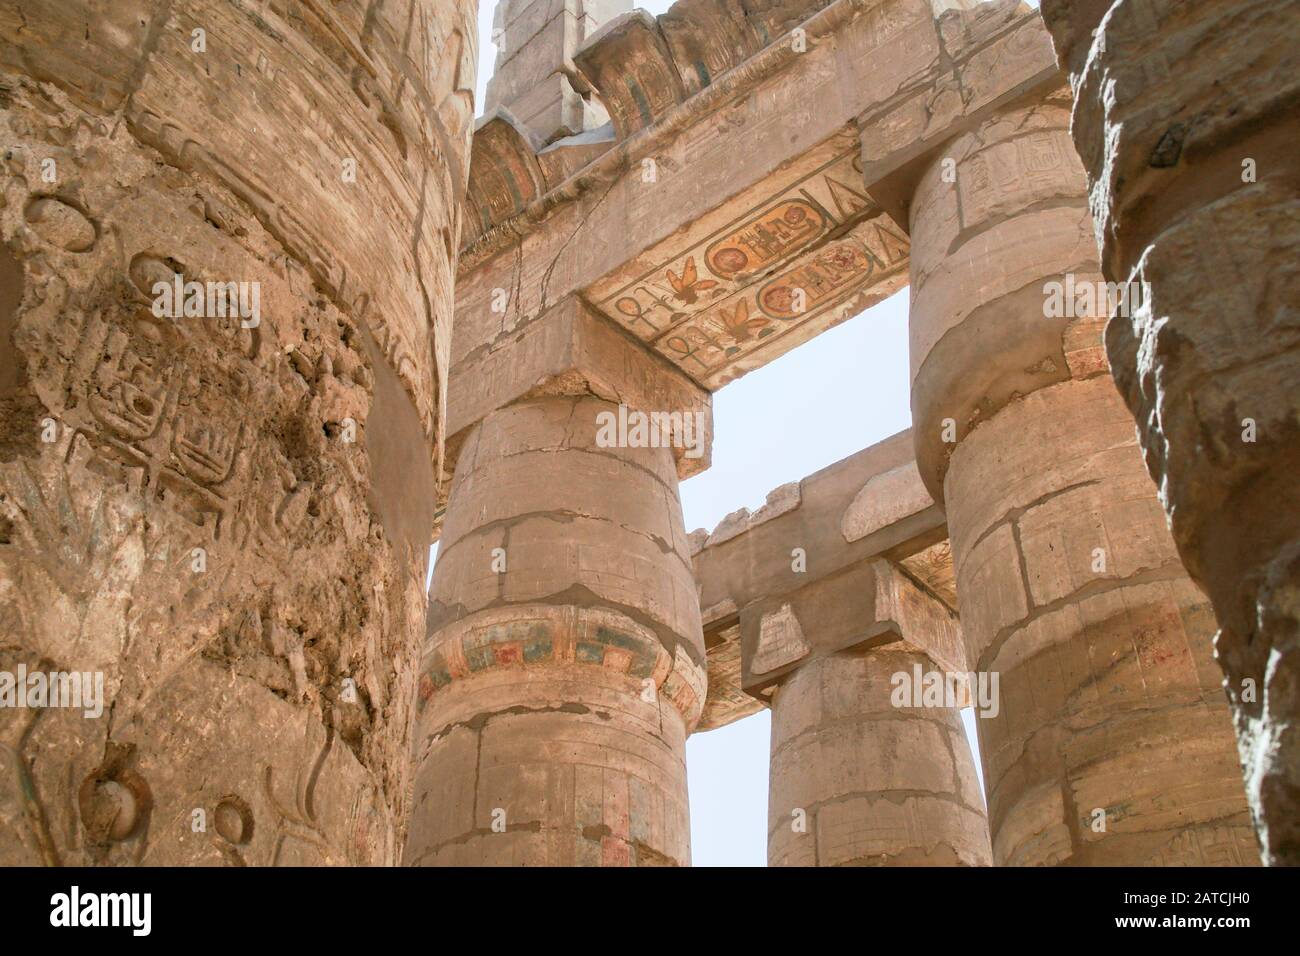 Luxor, Karnak, Egypte, Afrique. Temple de Karnak. Plusieurs colonnes à l'intérieur du temple montrant une cartouche, des hiéroglyphes et d'autres sculptures de soulagement. Banque D'Images